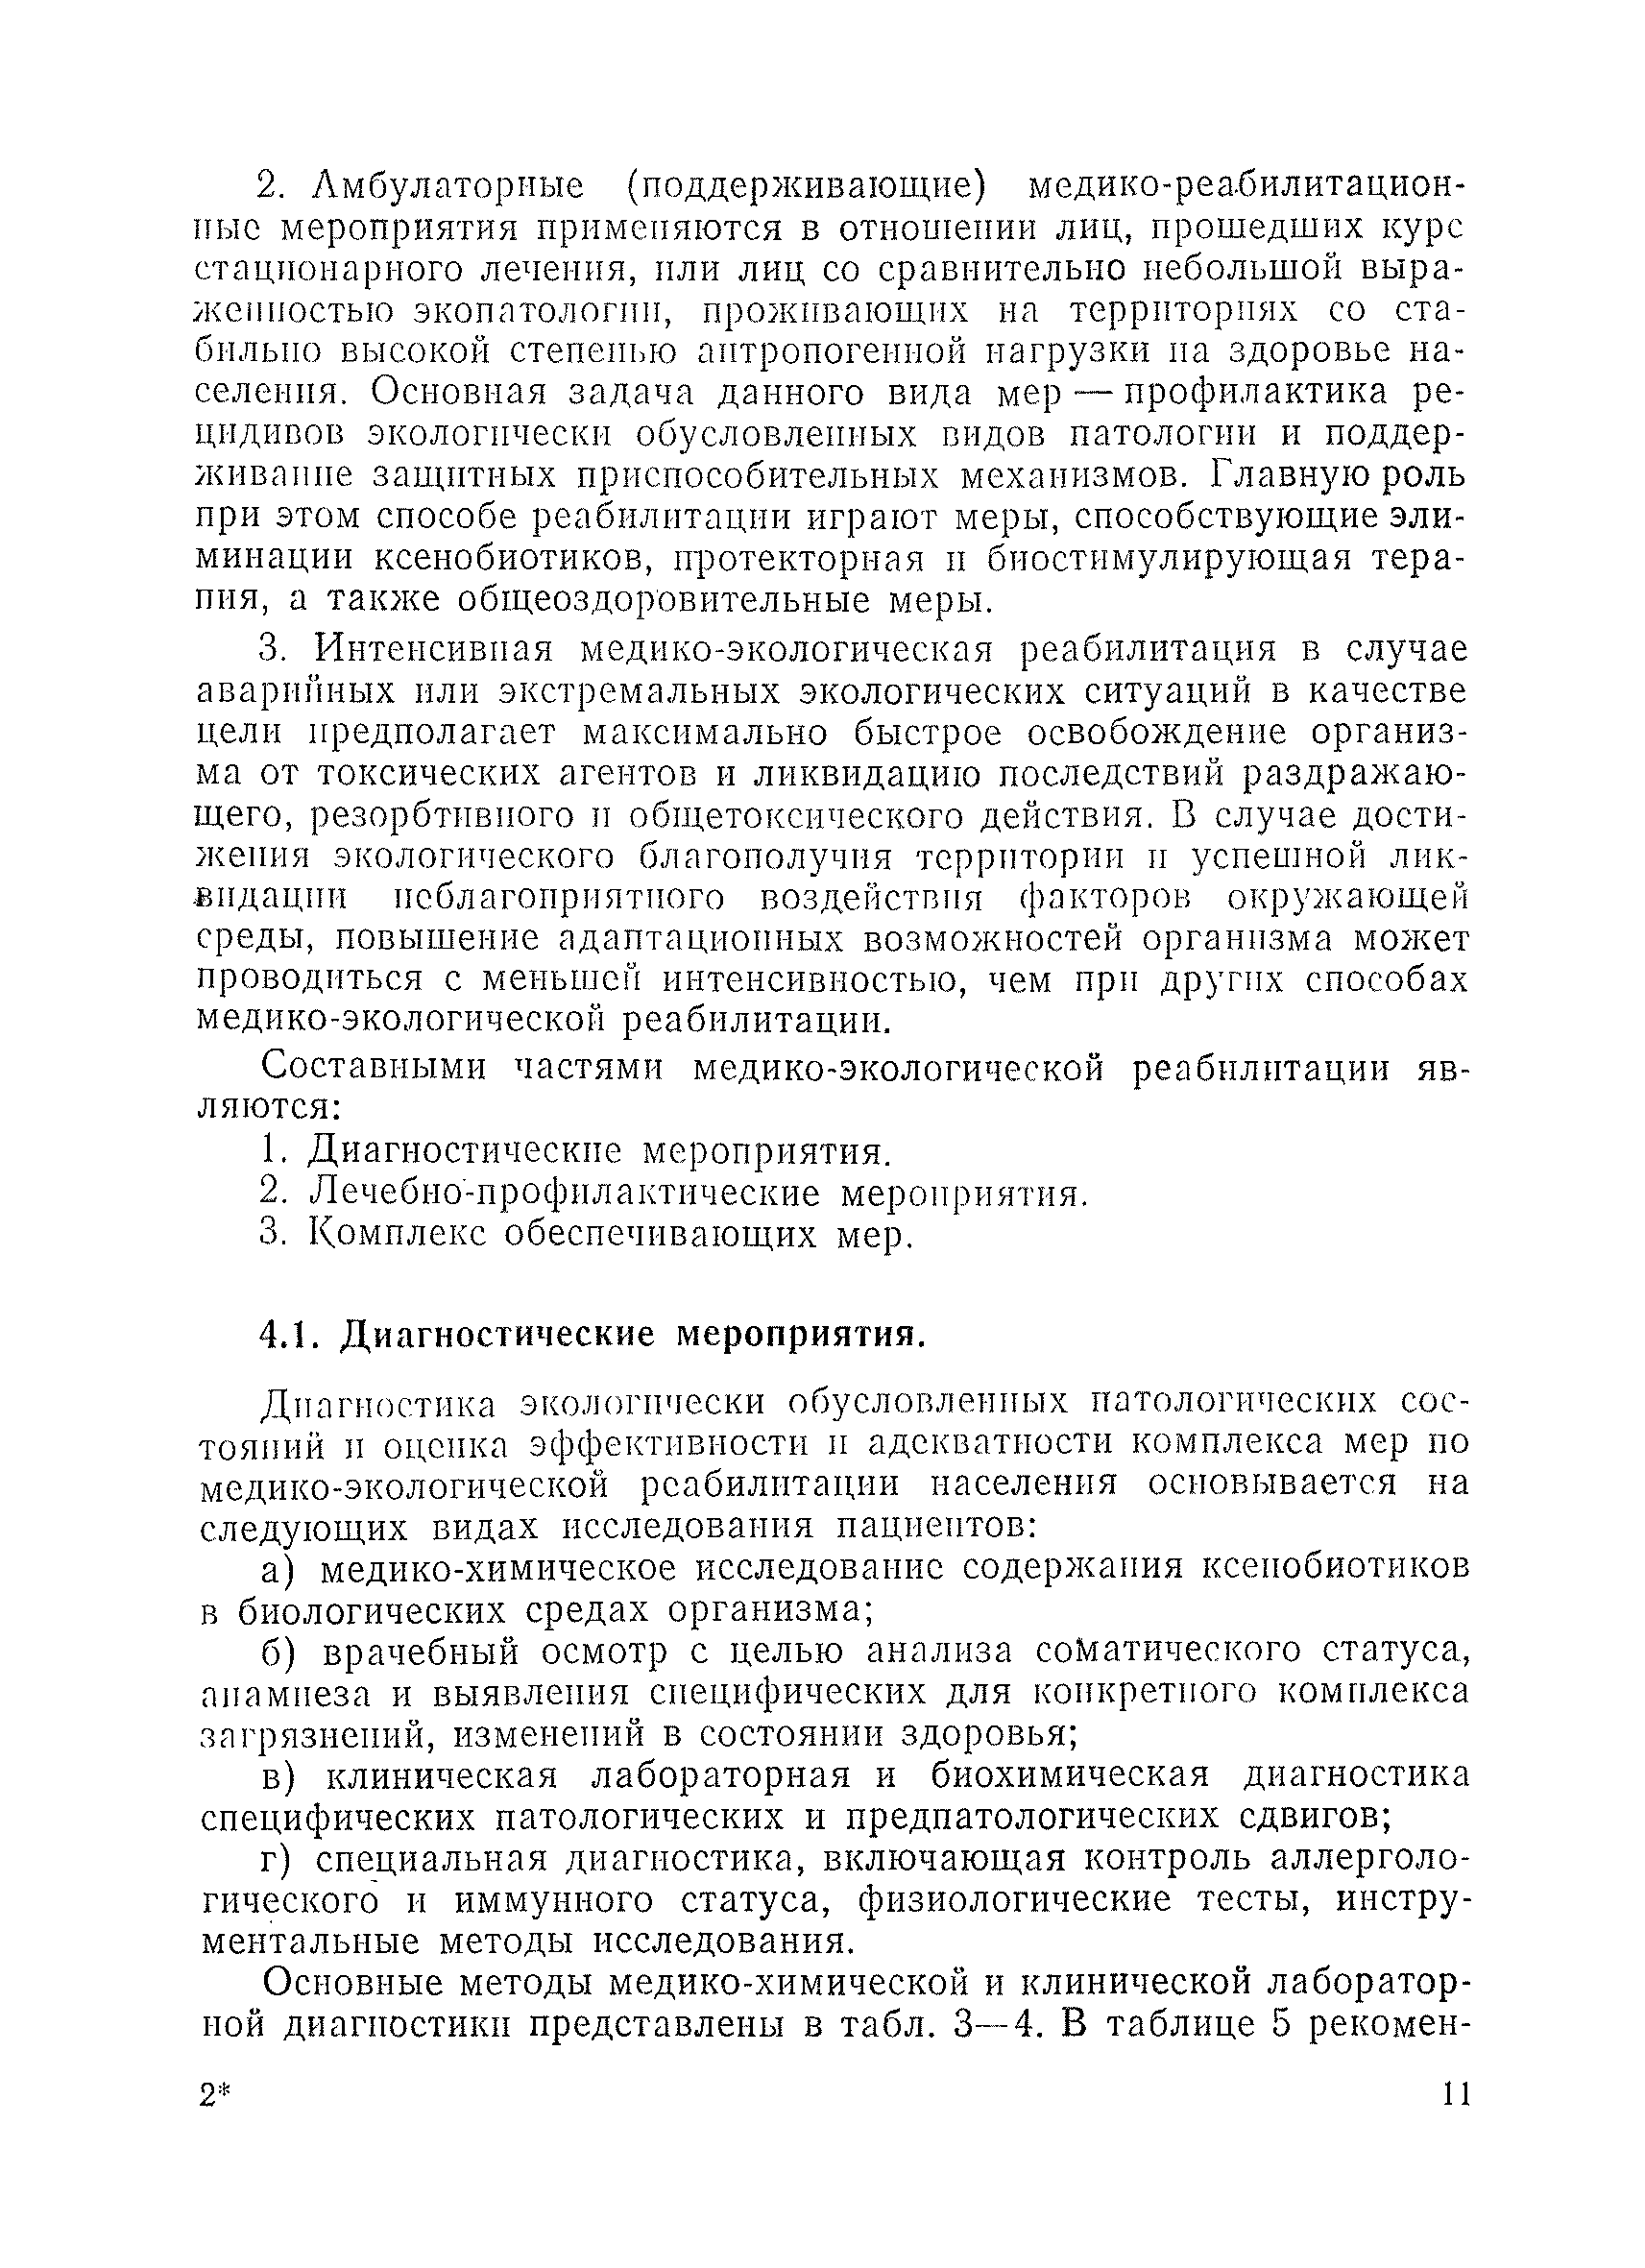 Методические рекомендации 01-19/51-11